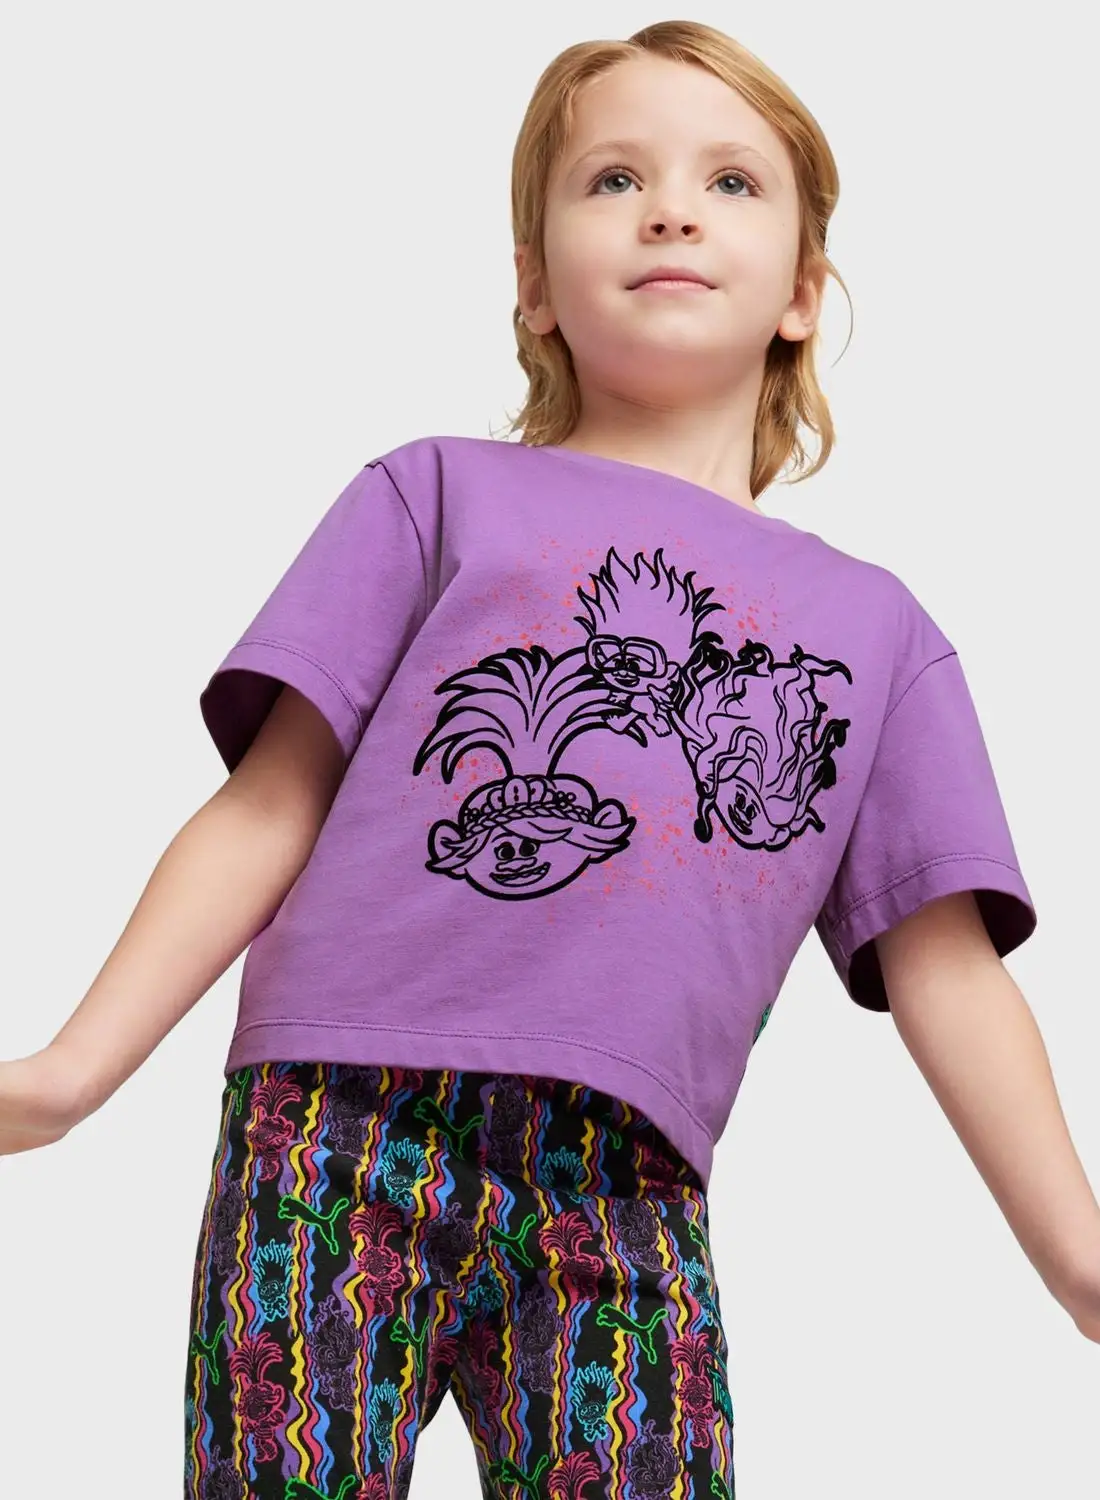 PUMA Kids Trolls Graphic T-Shirt